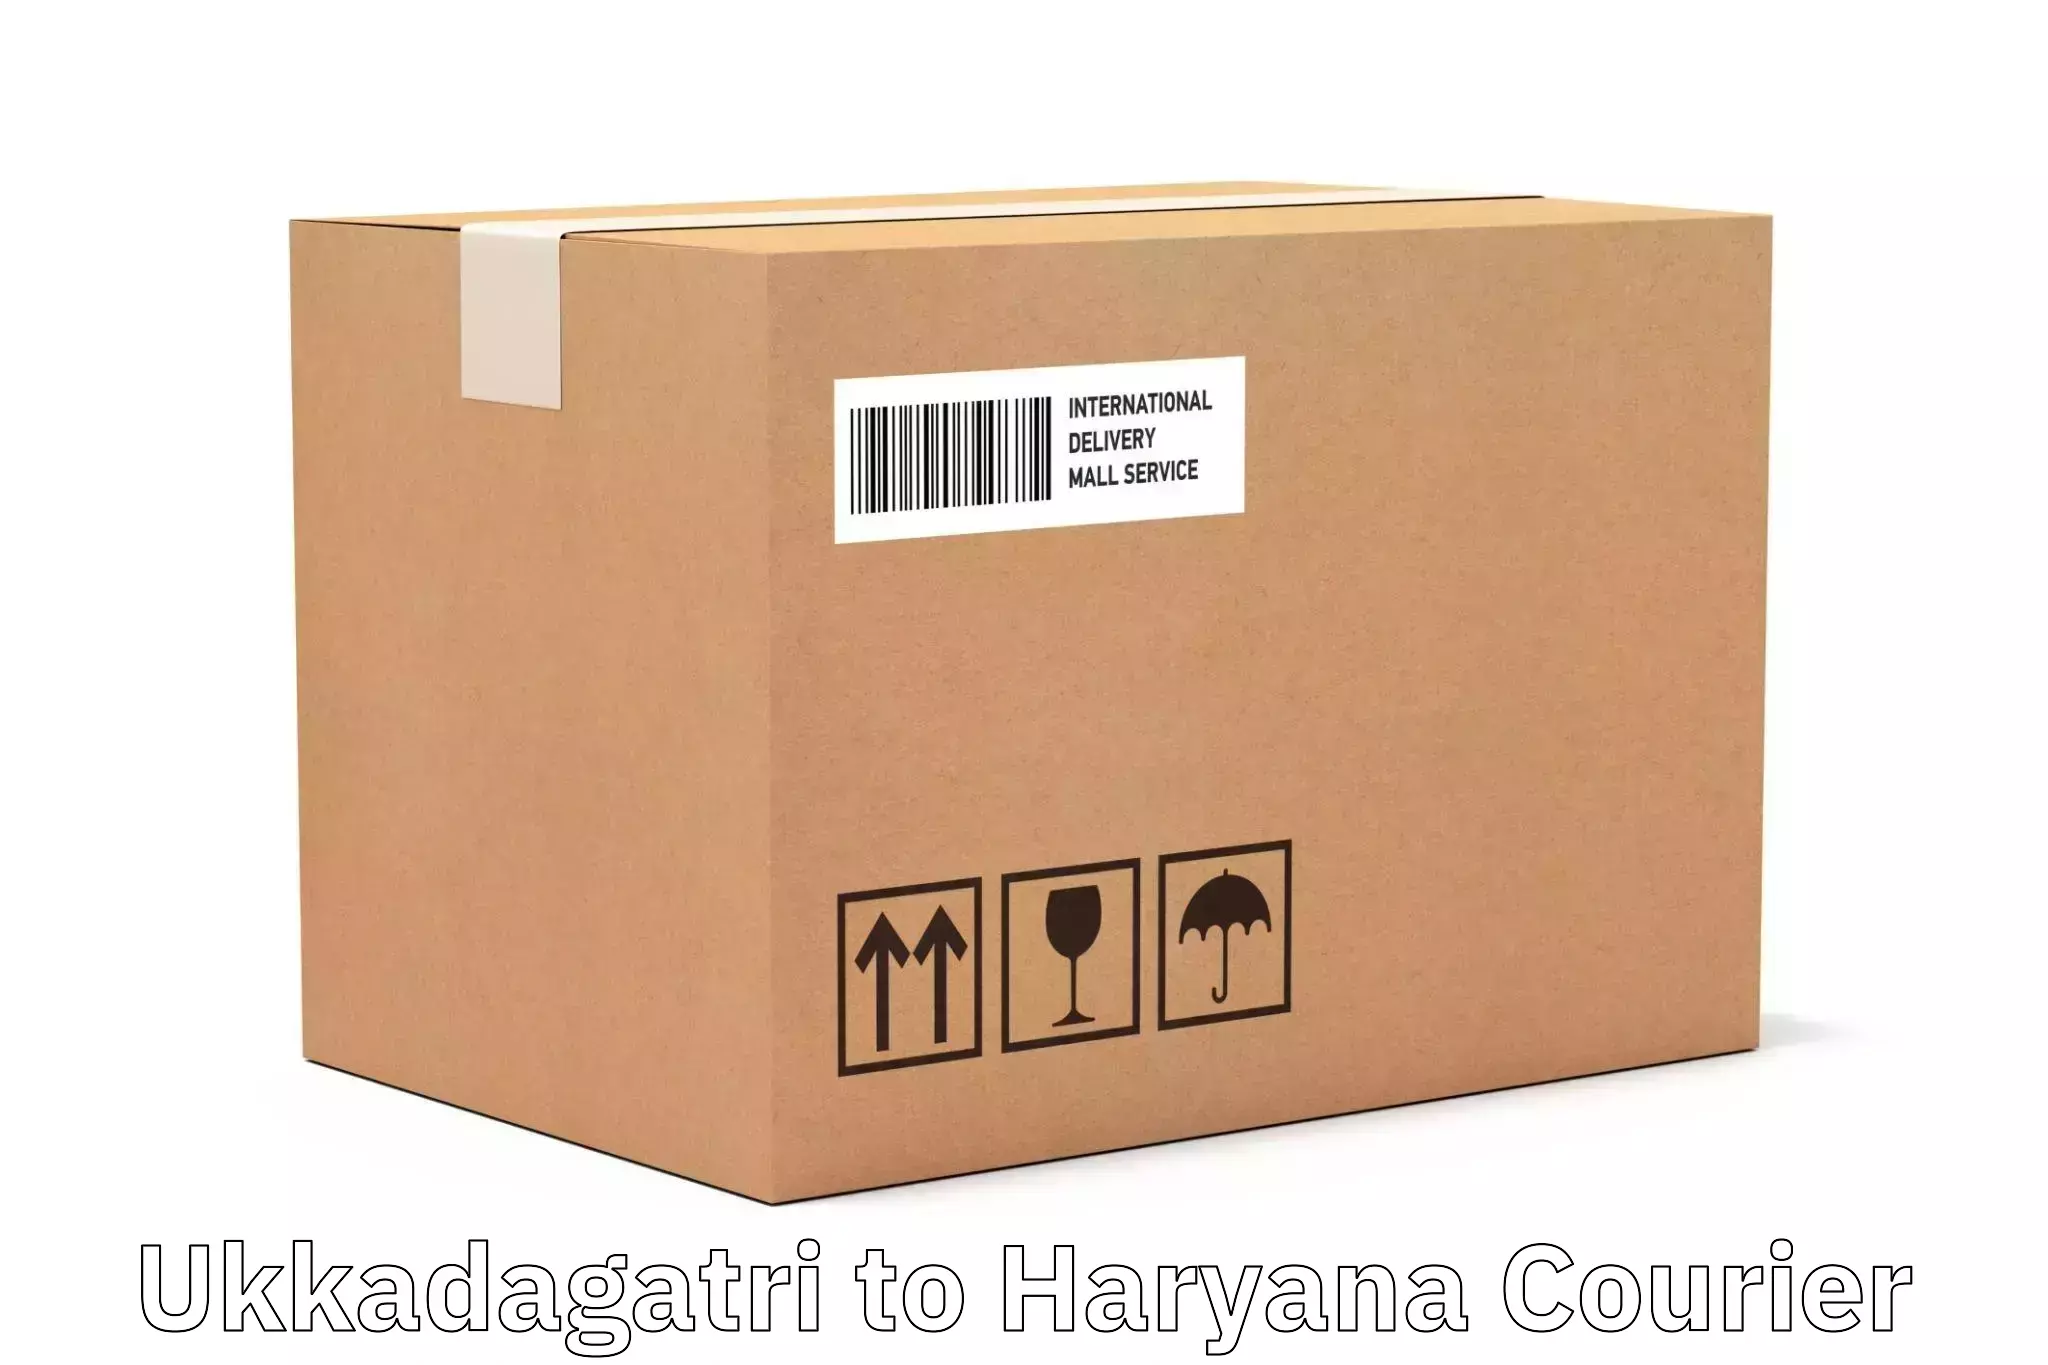 Smart logistics strategies in Ukkadagatri to Haryana